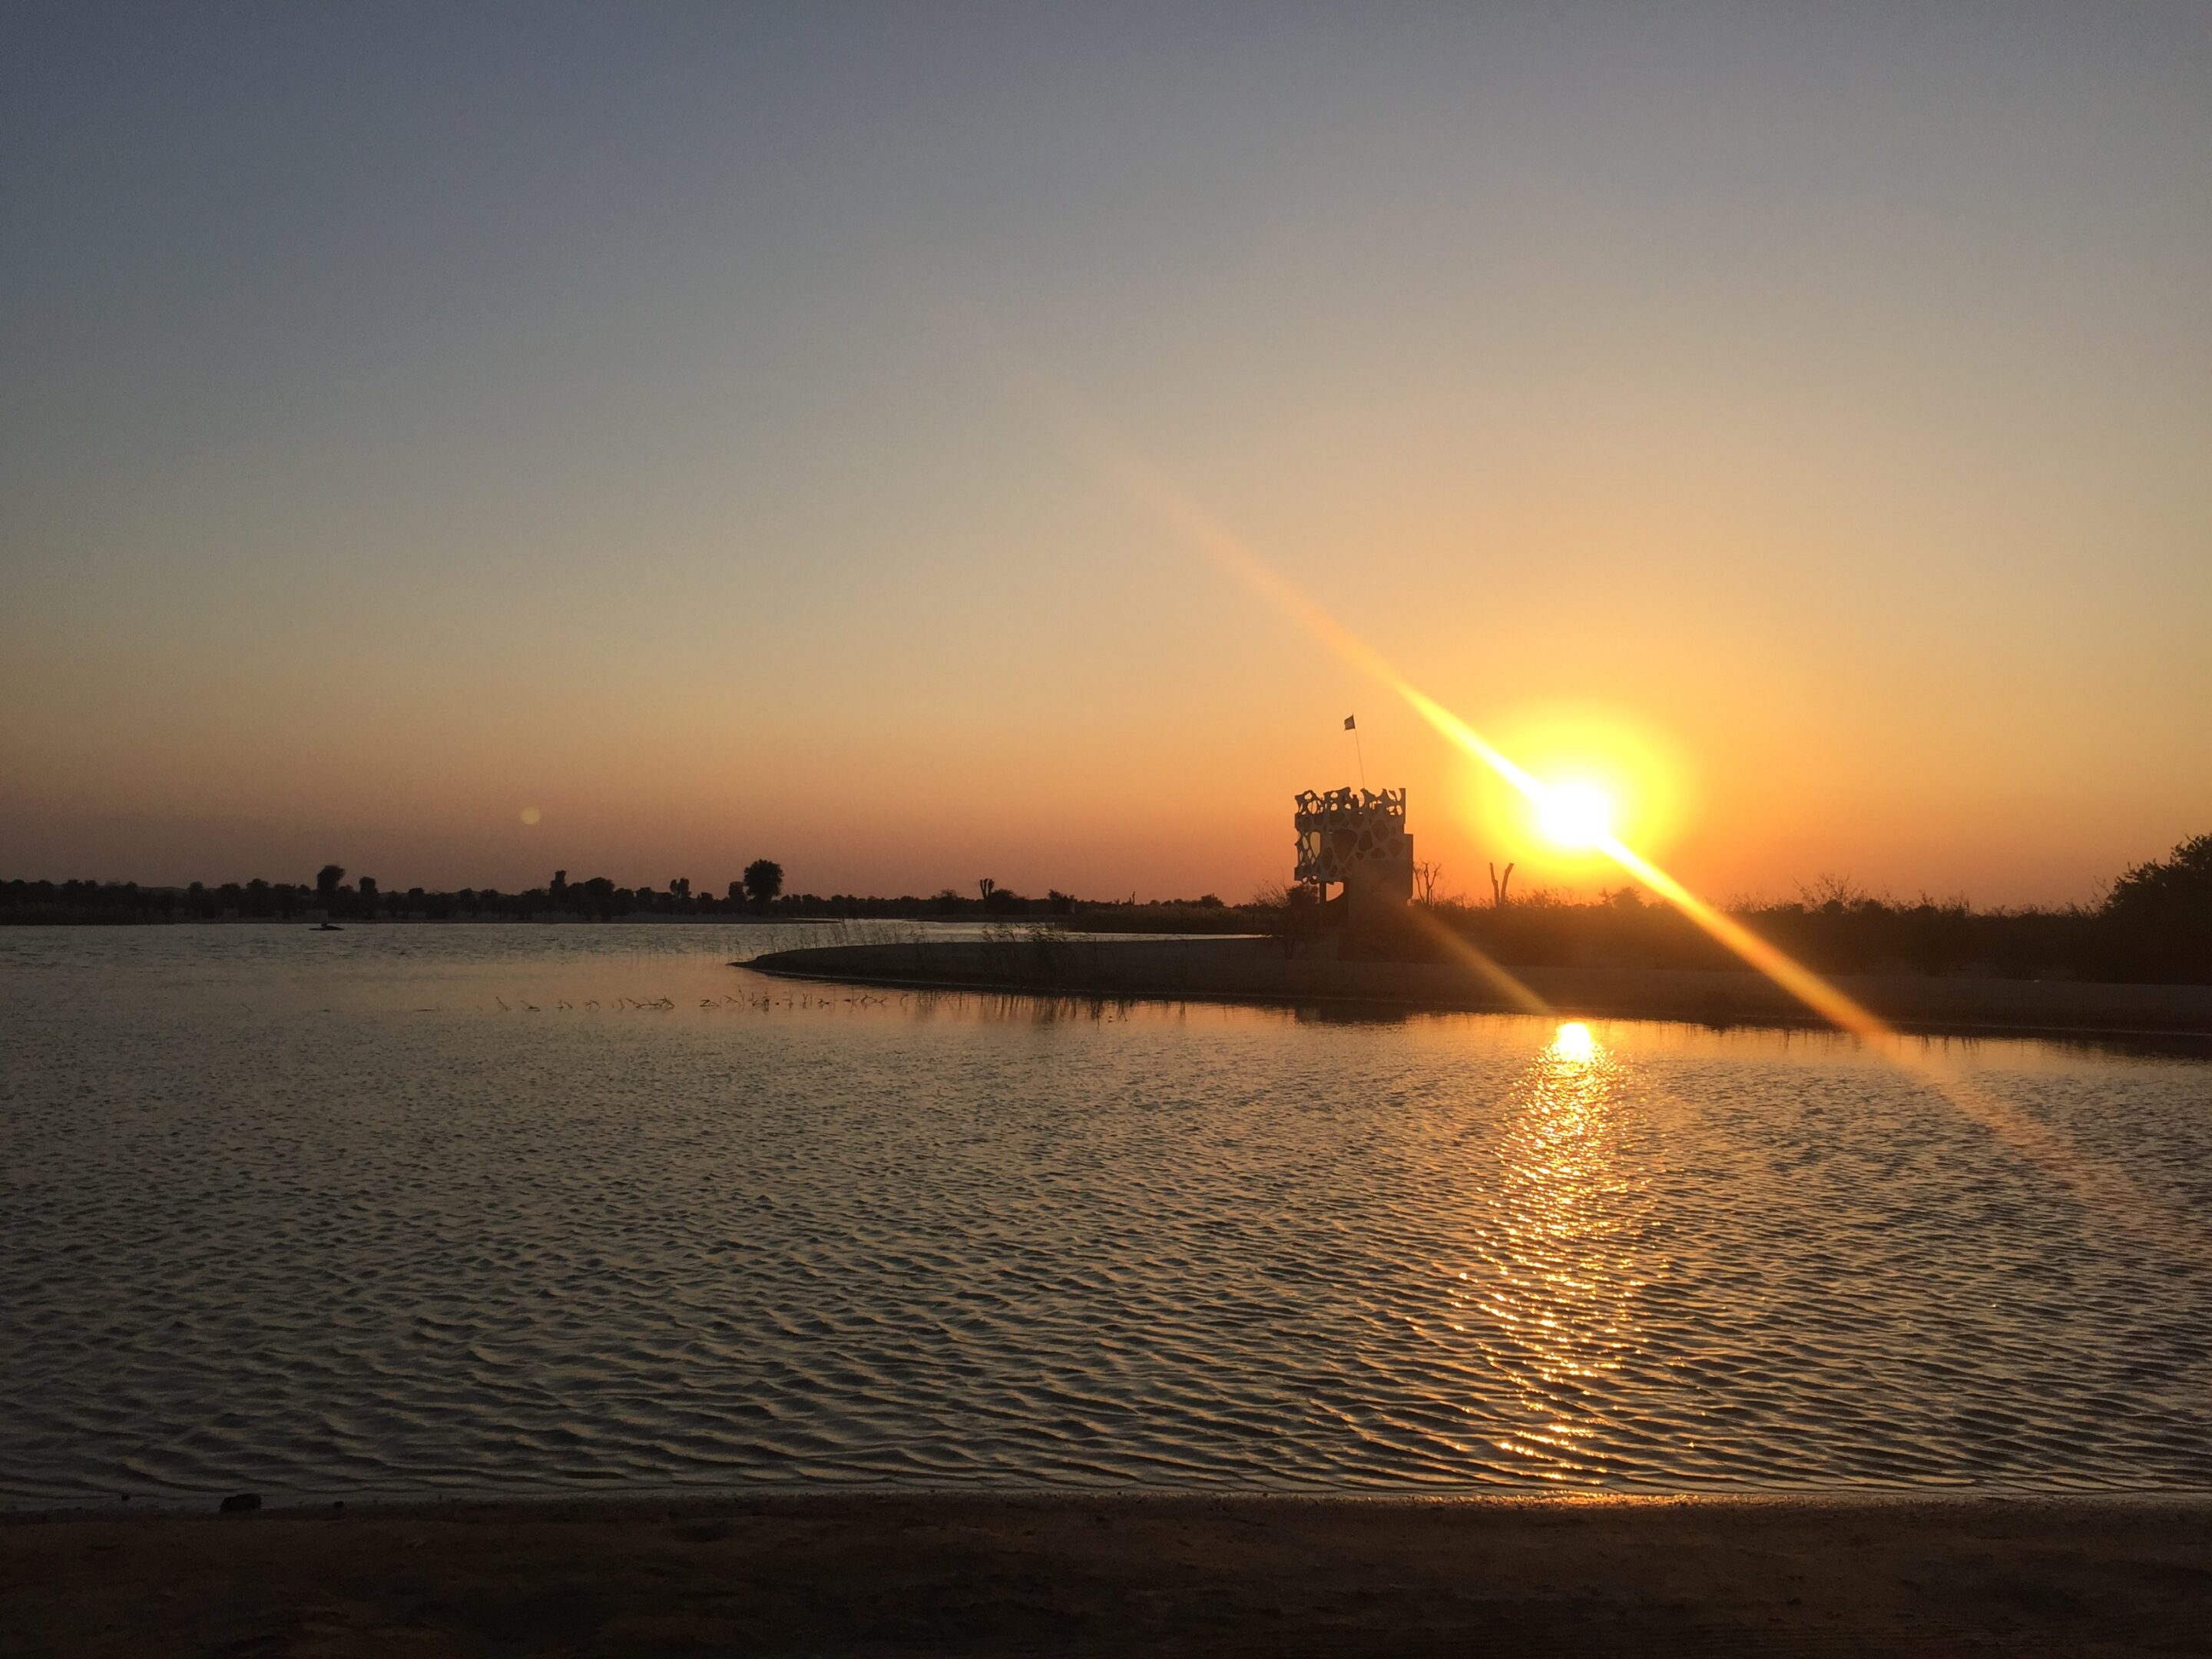 Sunset at Al Qudra lake Dubai, UAE